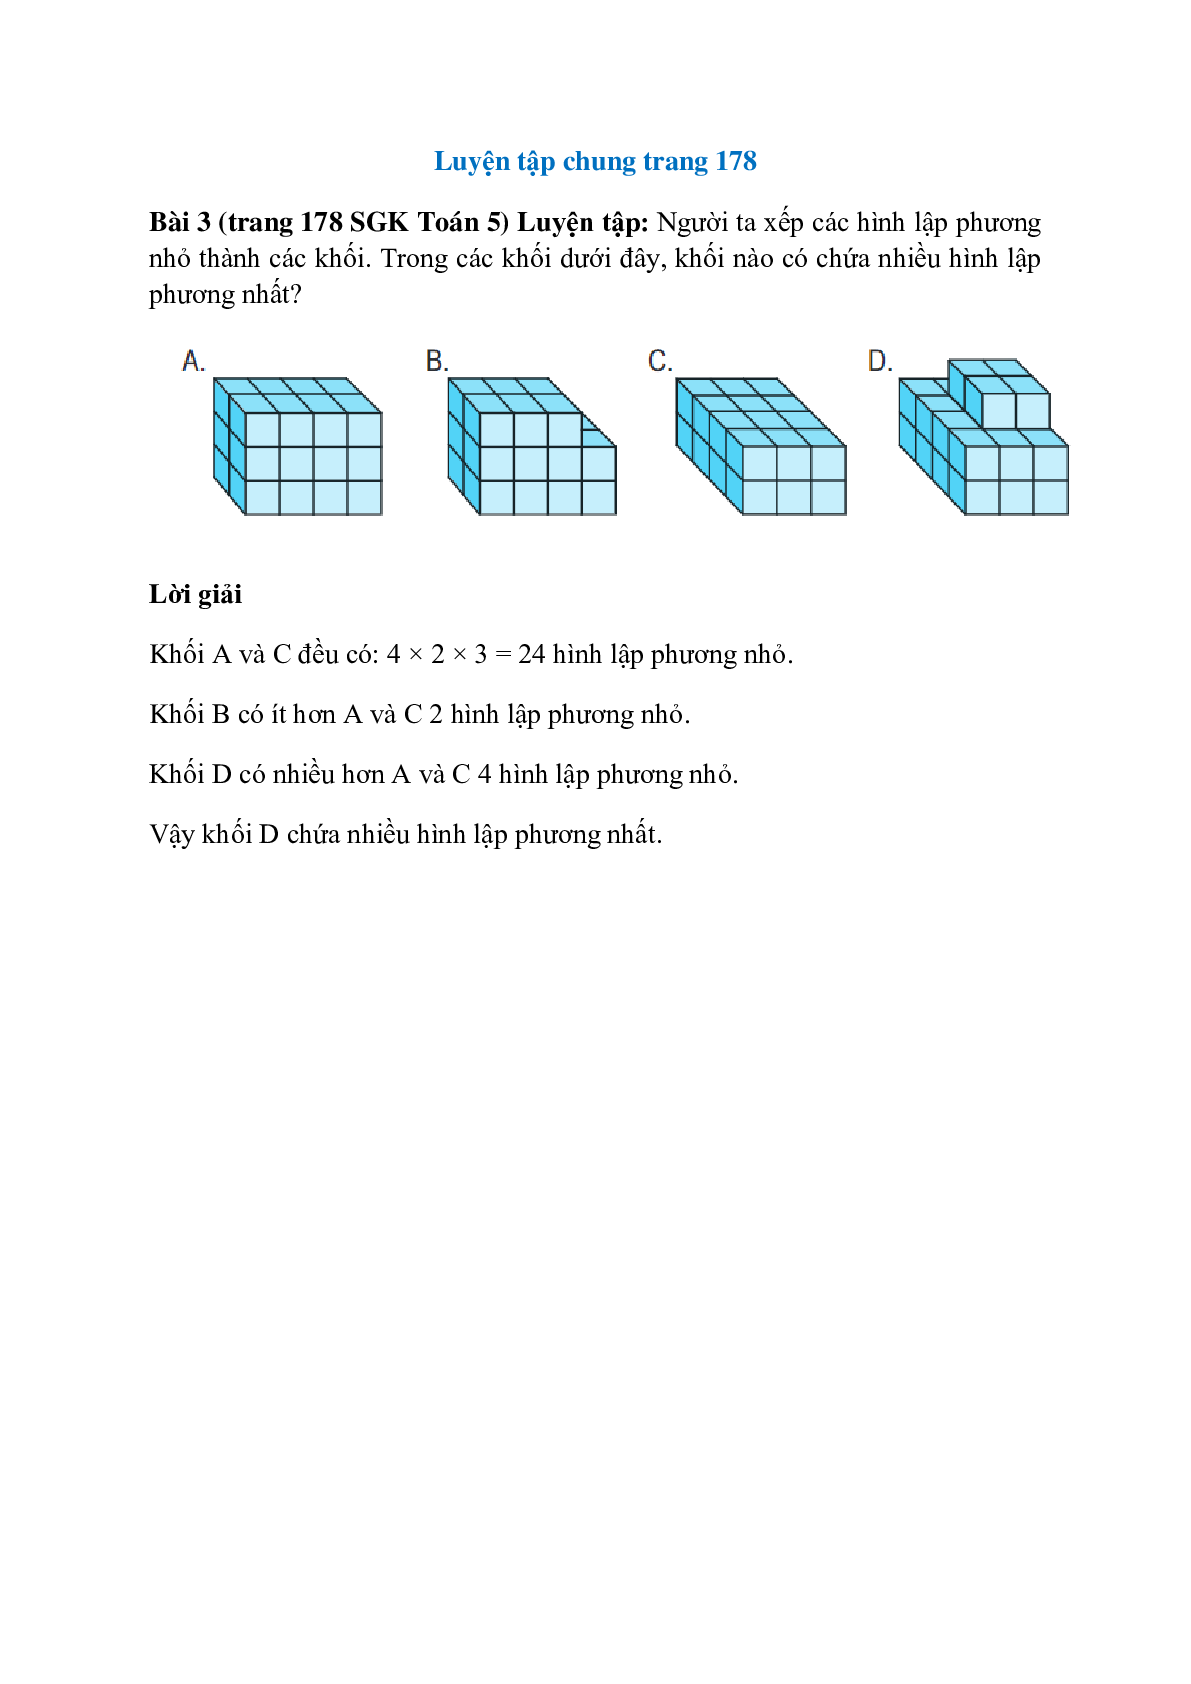 Người ta xếp các hình lập phương nhỏ thành các khối (trang 1)